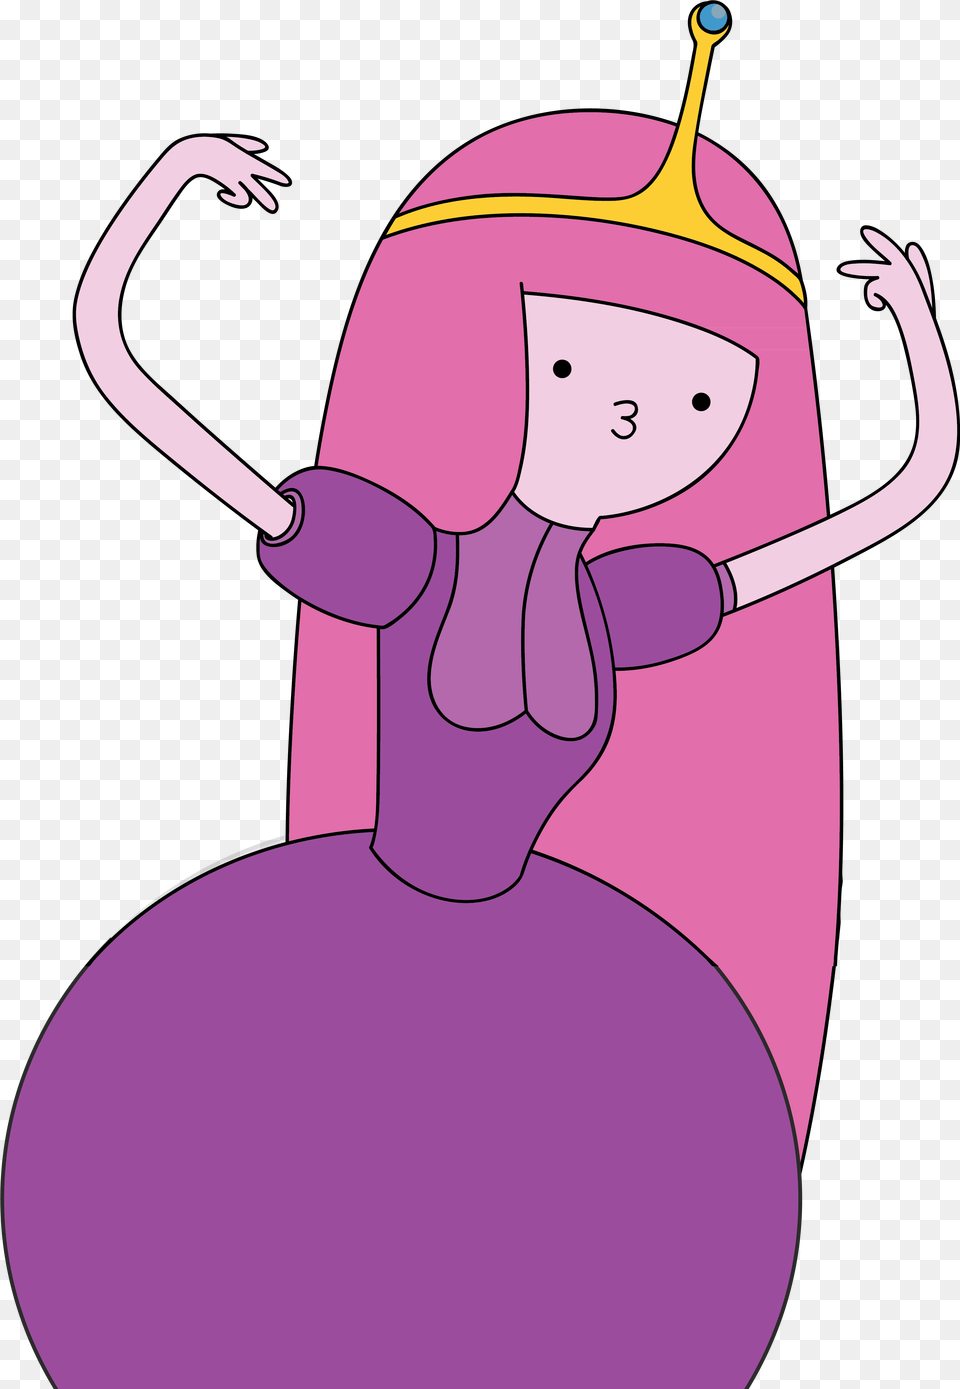 Princess Bubblegum Adventure Time Profile, Purple, Adult, Female, Person Png Image